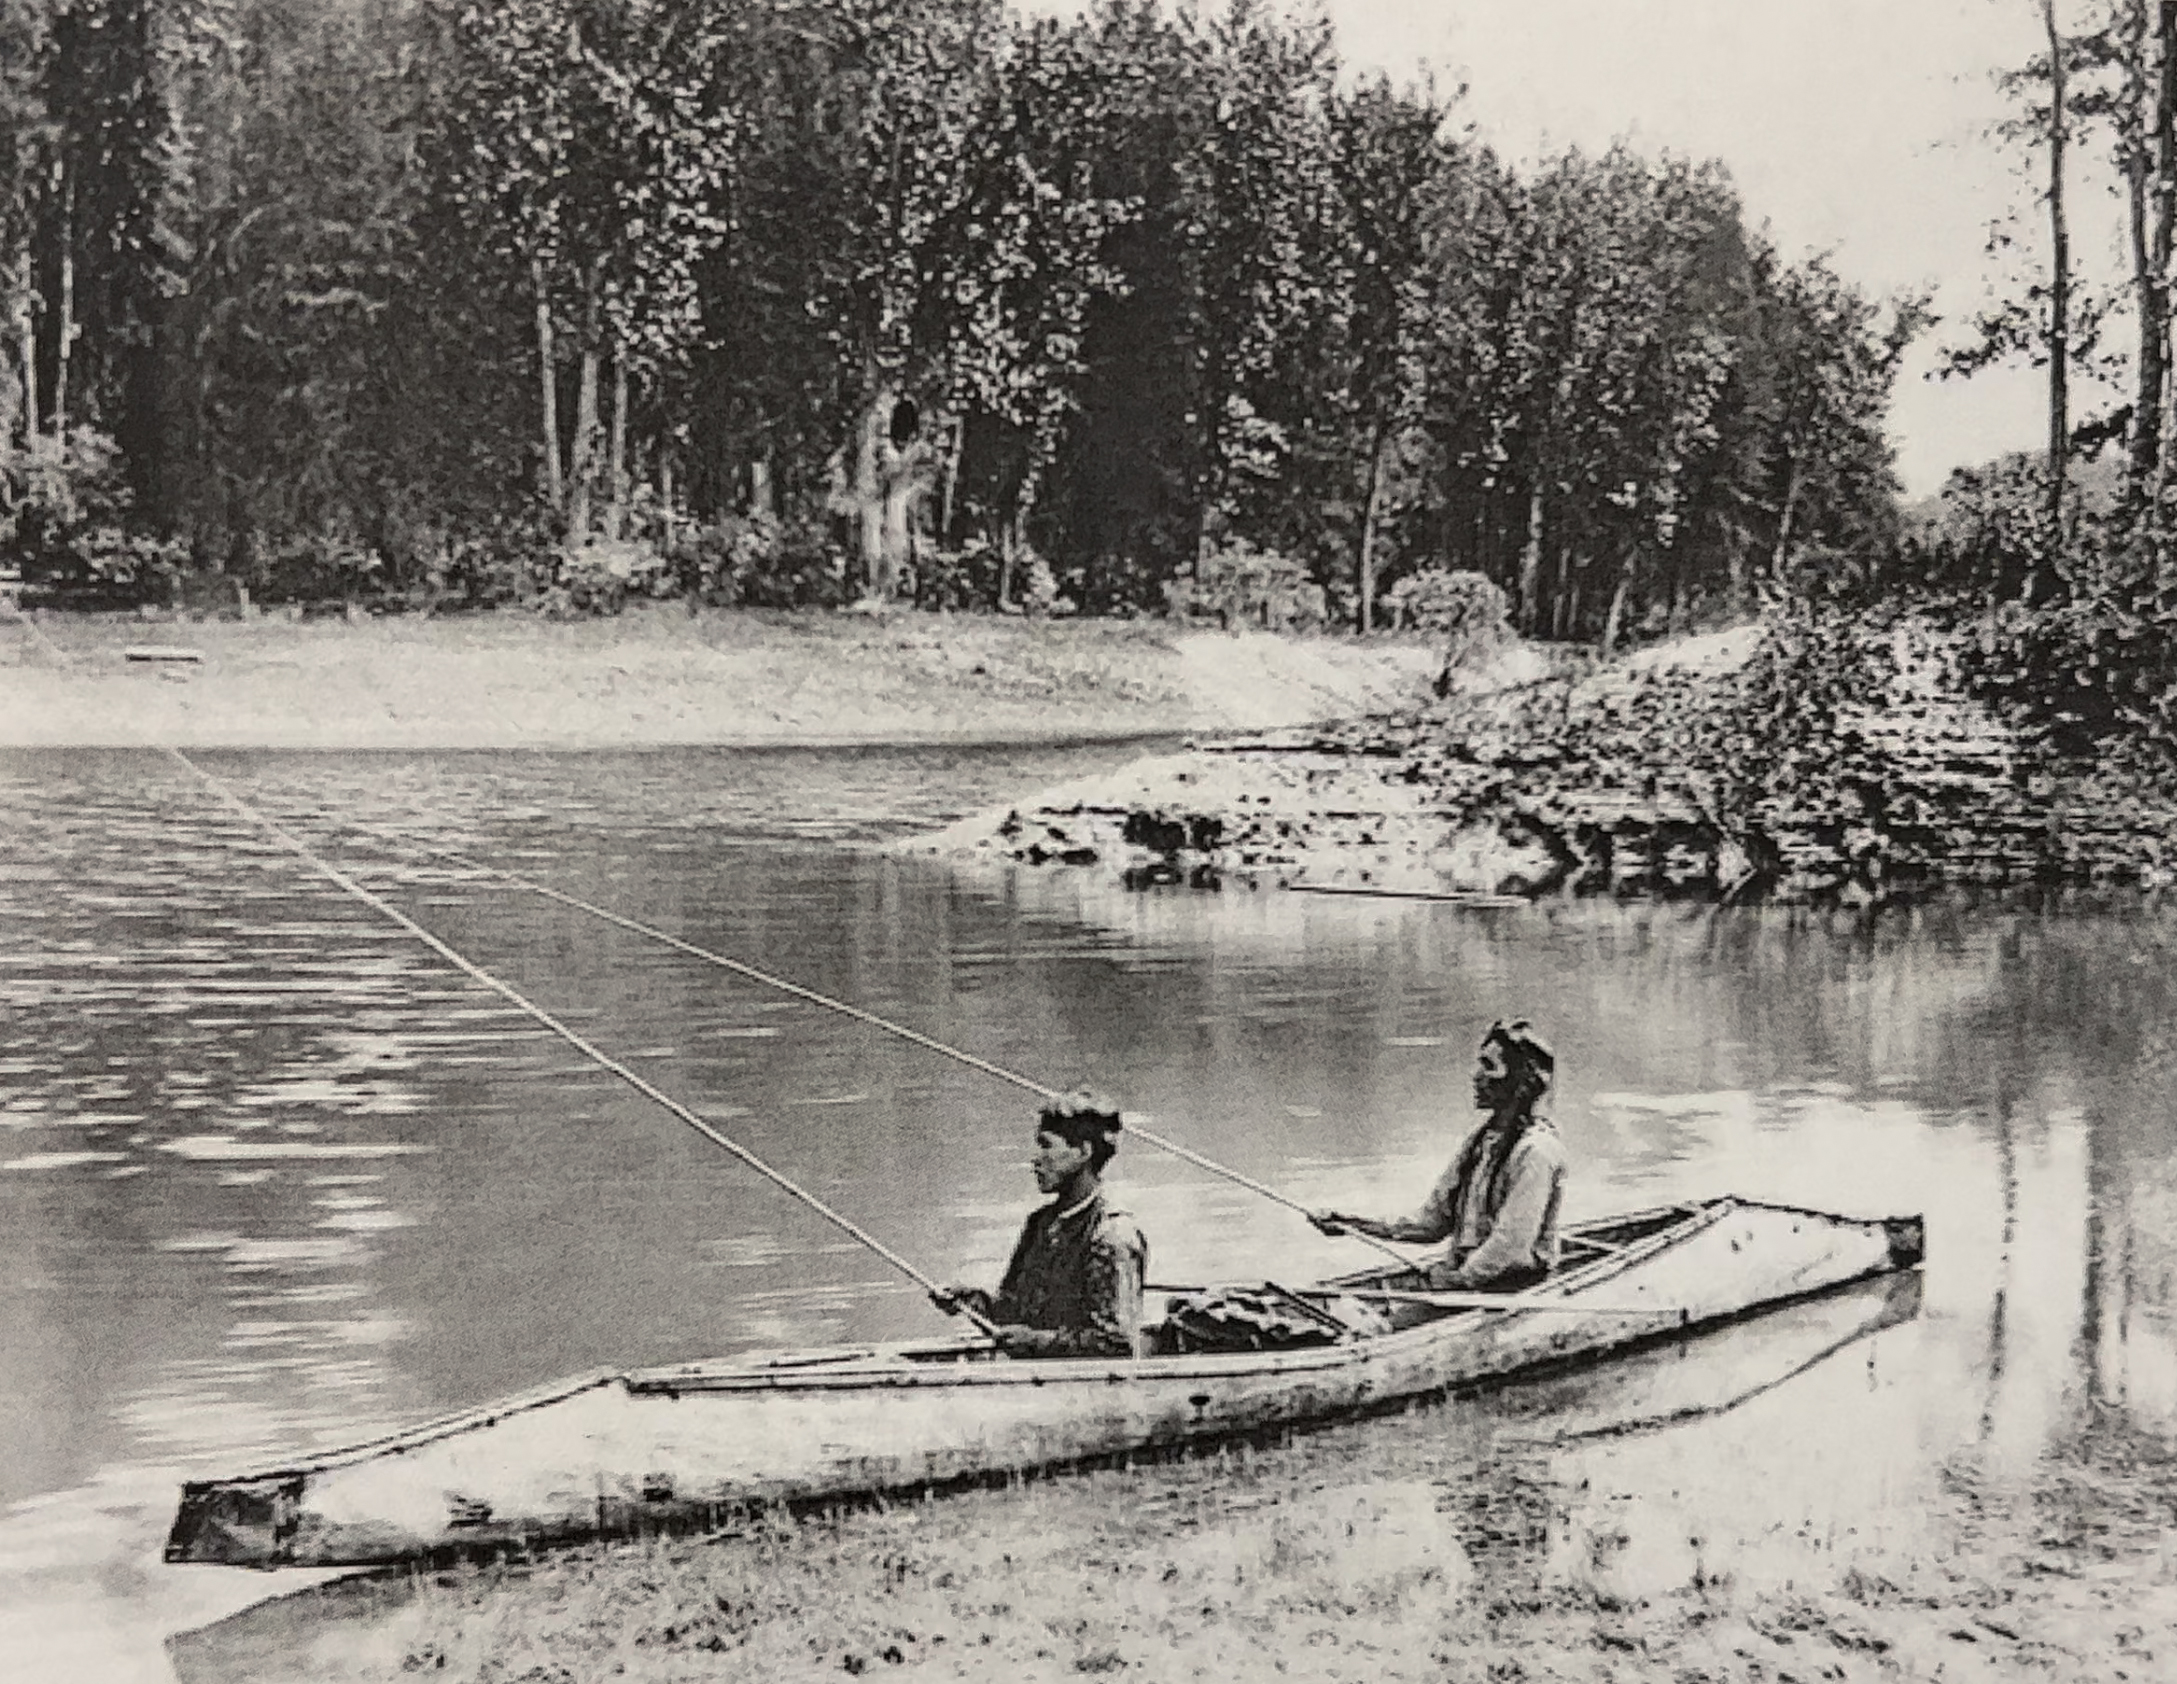 sturgeon-nosed-canoe-Kootenay-tribe